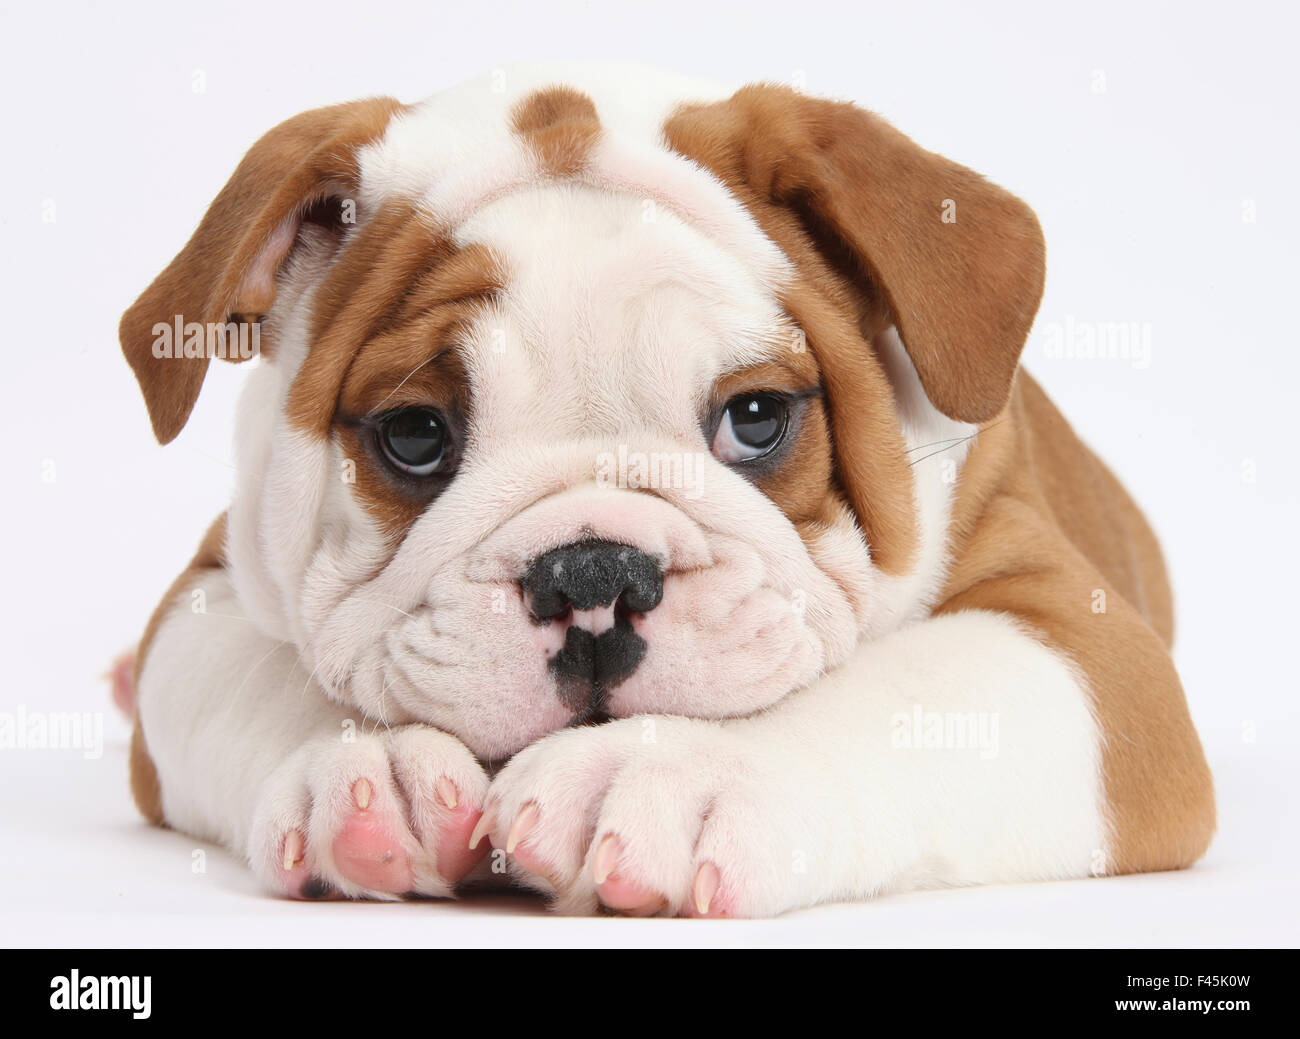 Bulldog cucciolo con mento sulle zampe, contro uno sfondo bianco Foto Stock